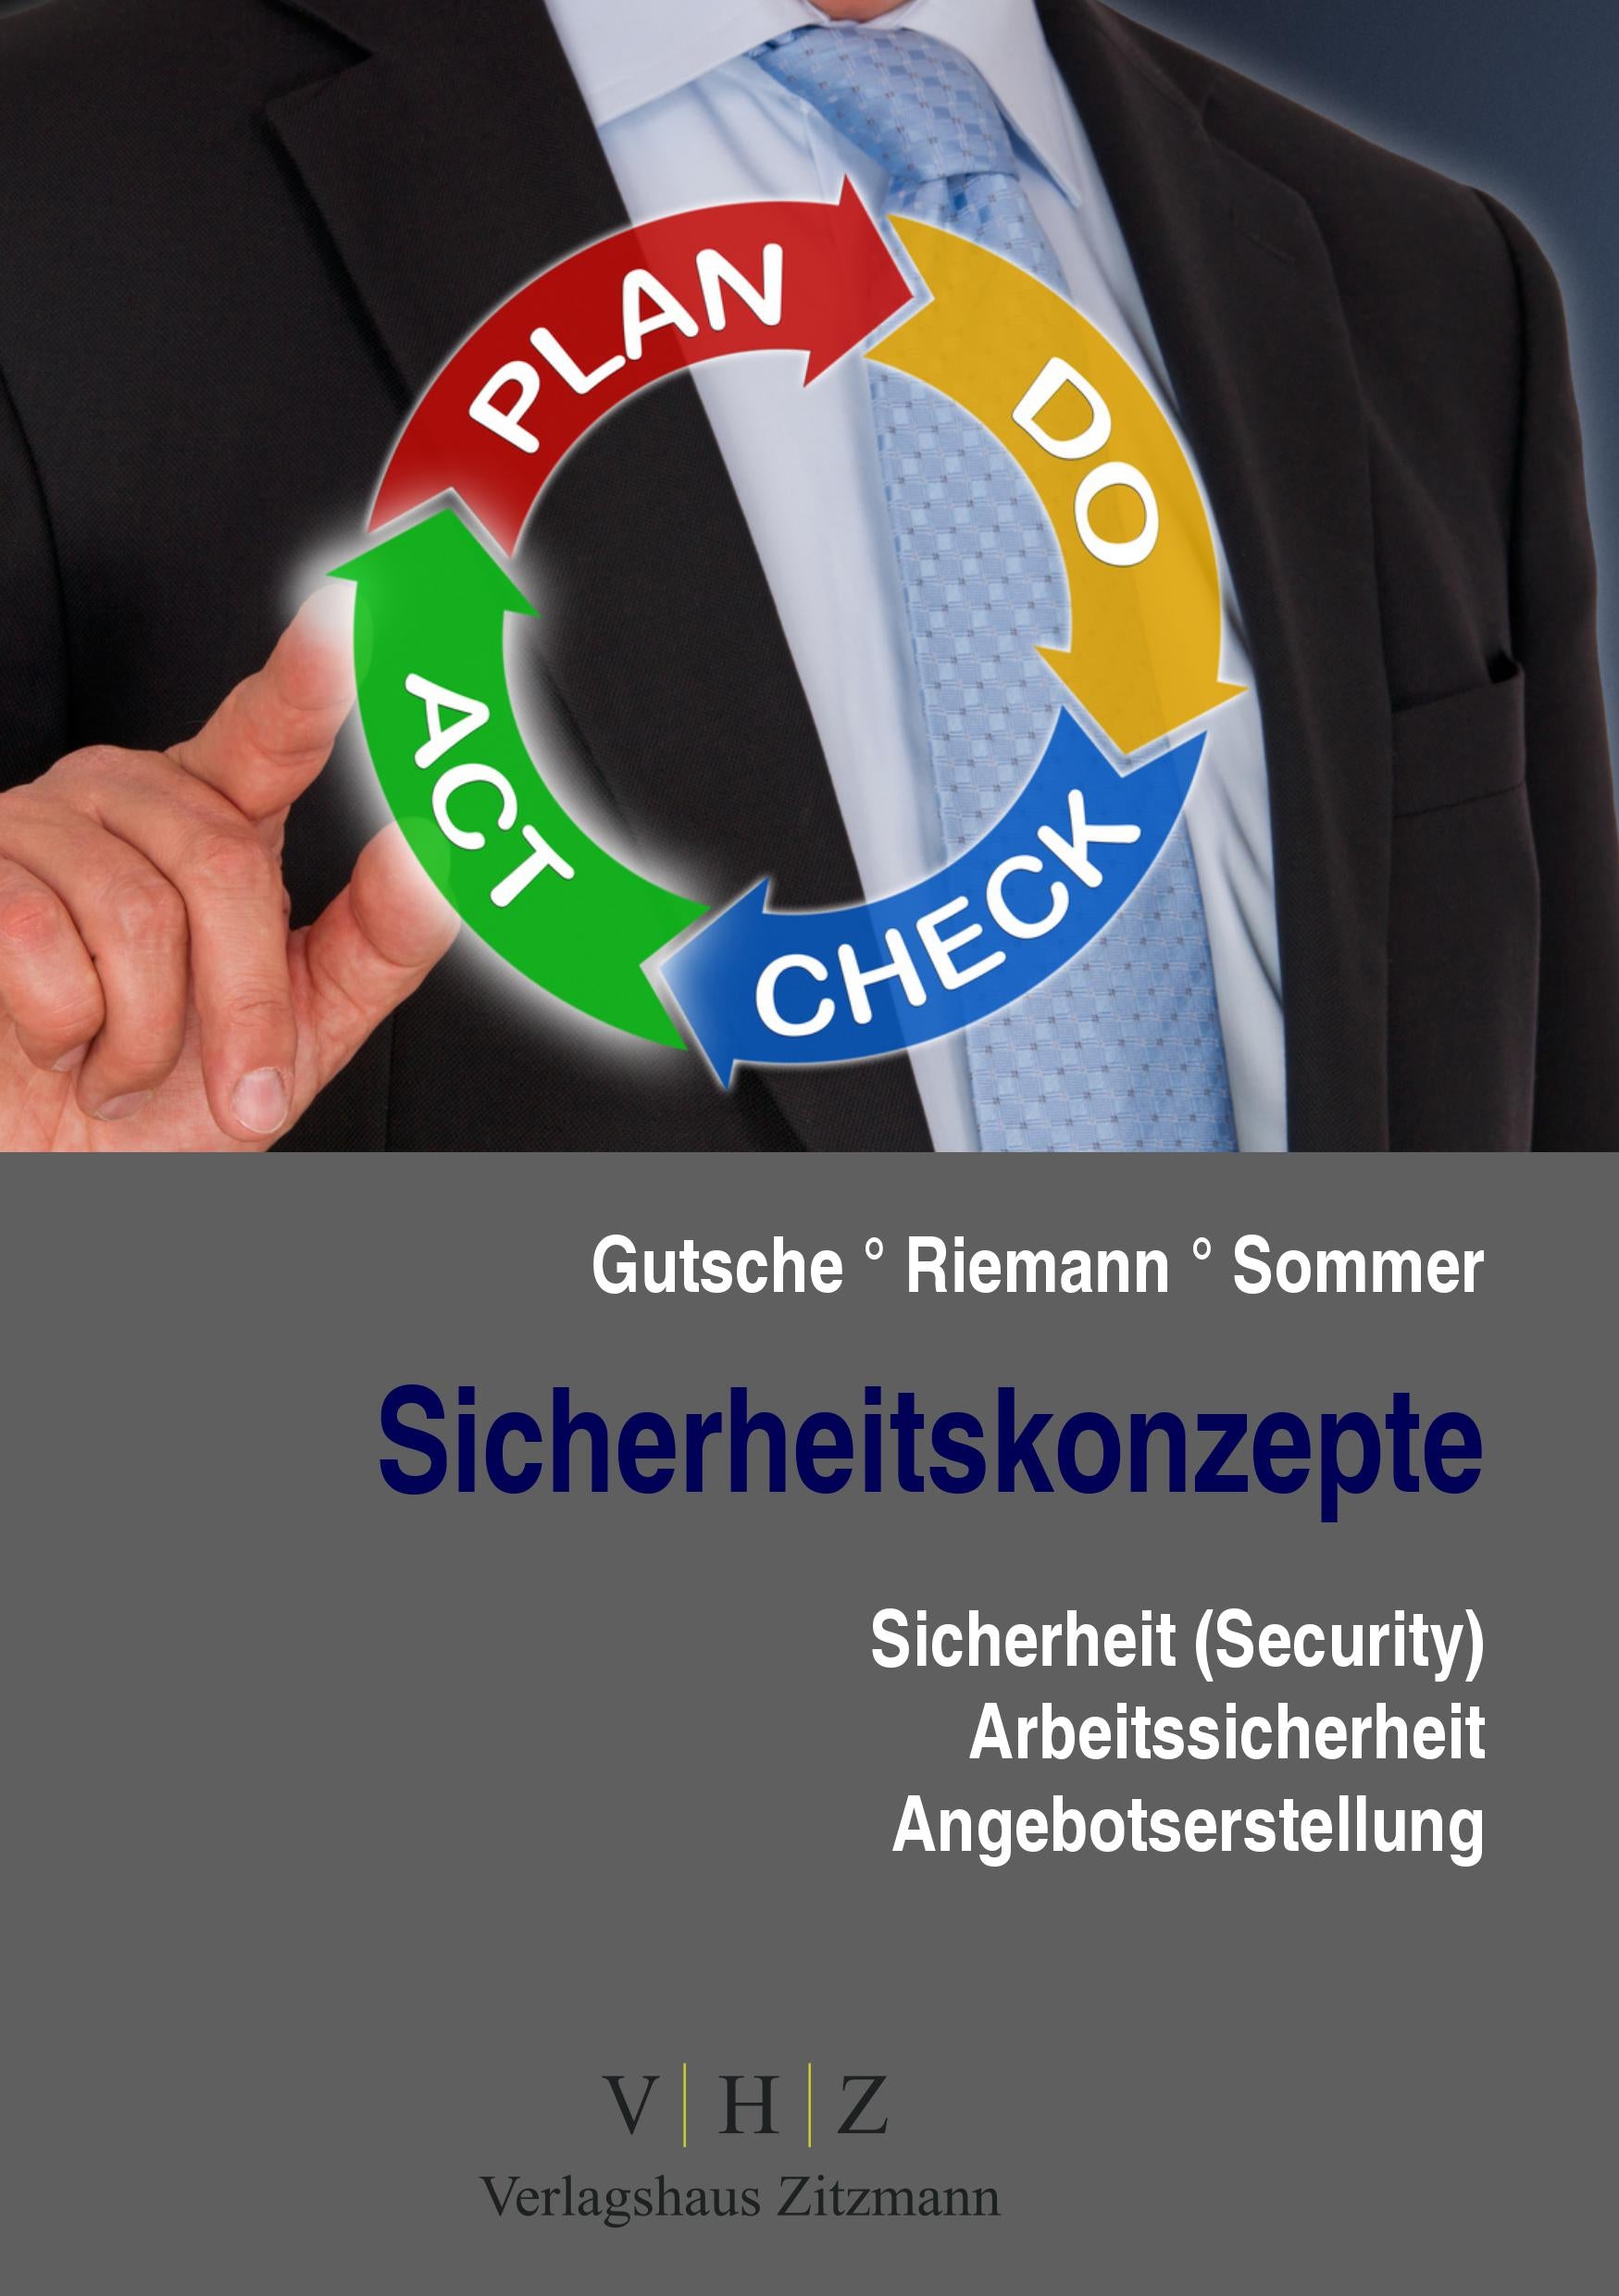 Sicherheitskonzepte - Sicherheit (Security), Arbeitssicherheit, Angebotserstellung